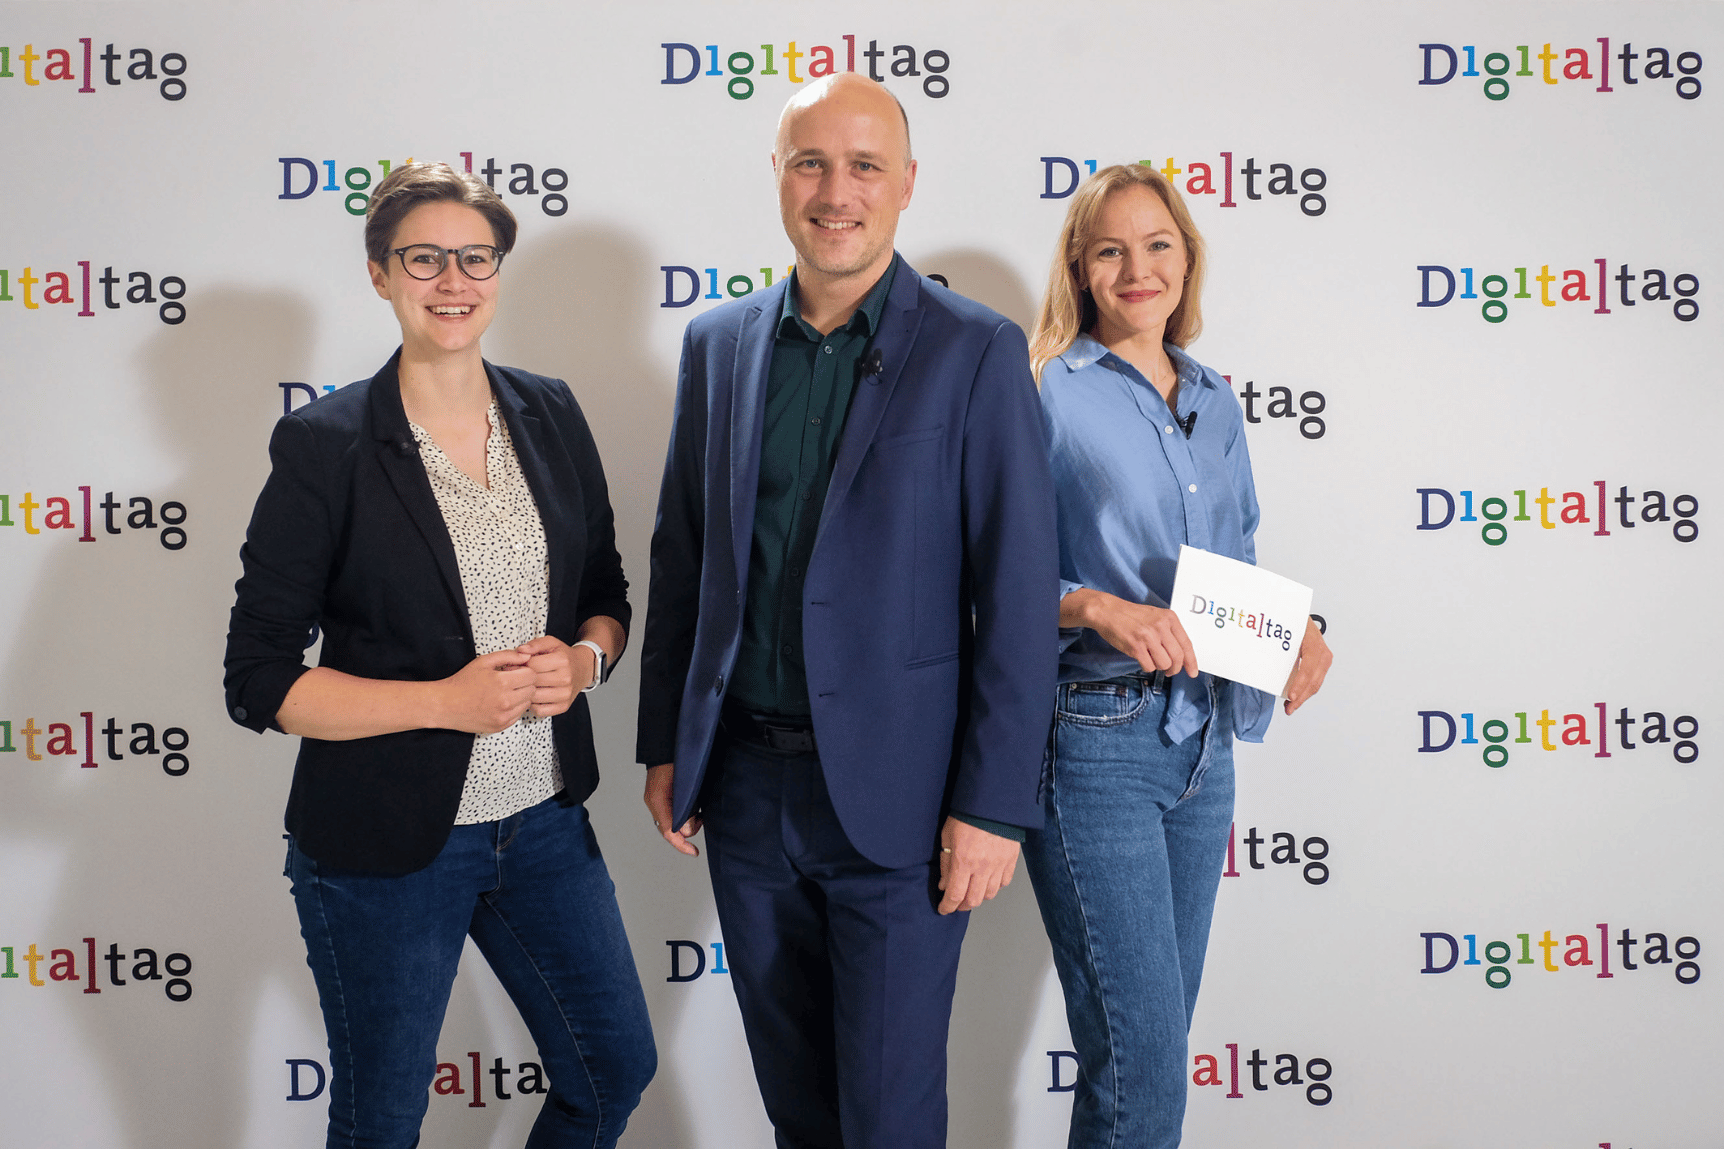 Staatssekretär Sven Lehmann steht mit den zwei Moderatorinnen des Digitaltag-Livestreams vor einer Digitaltag-Fotowand